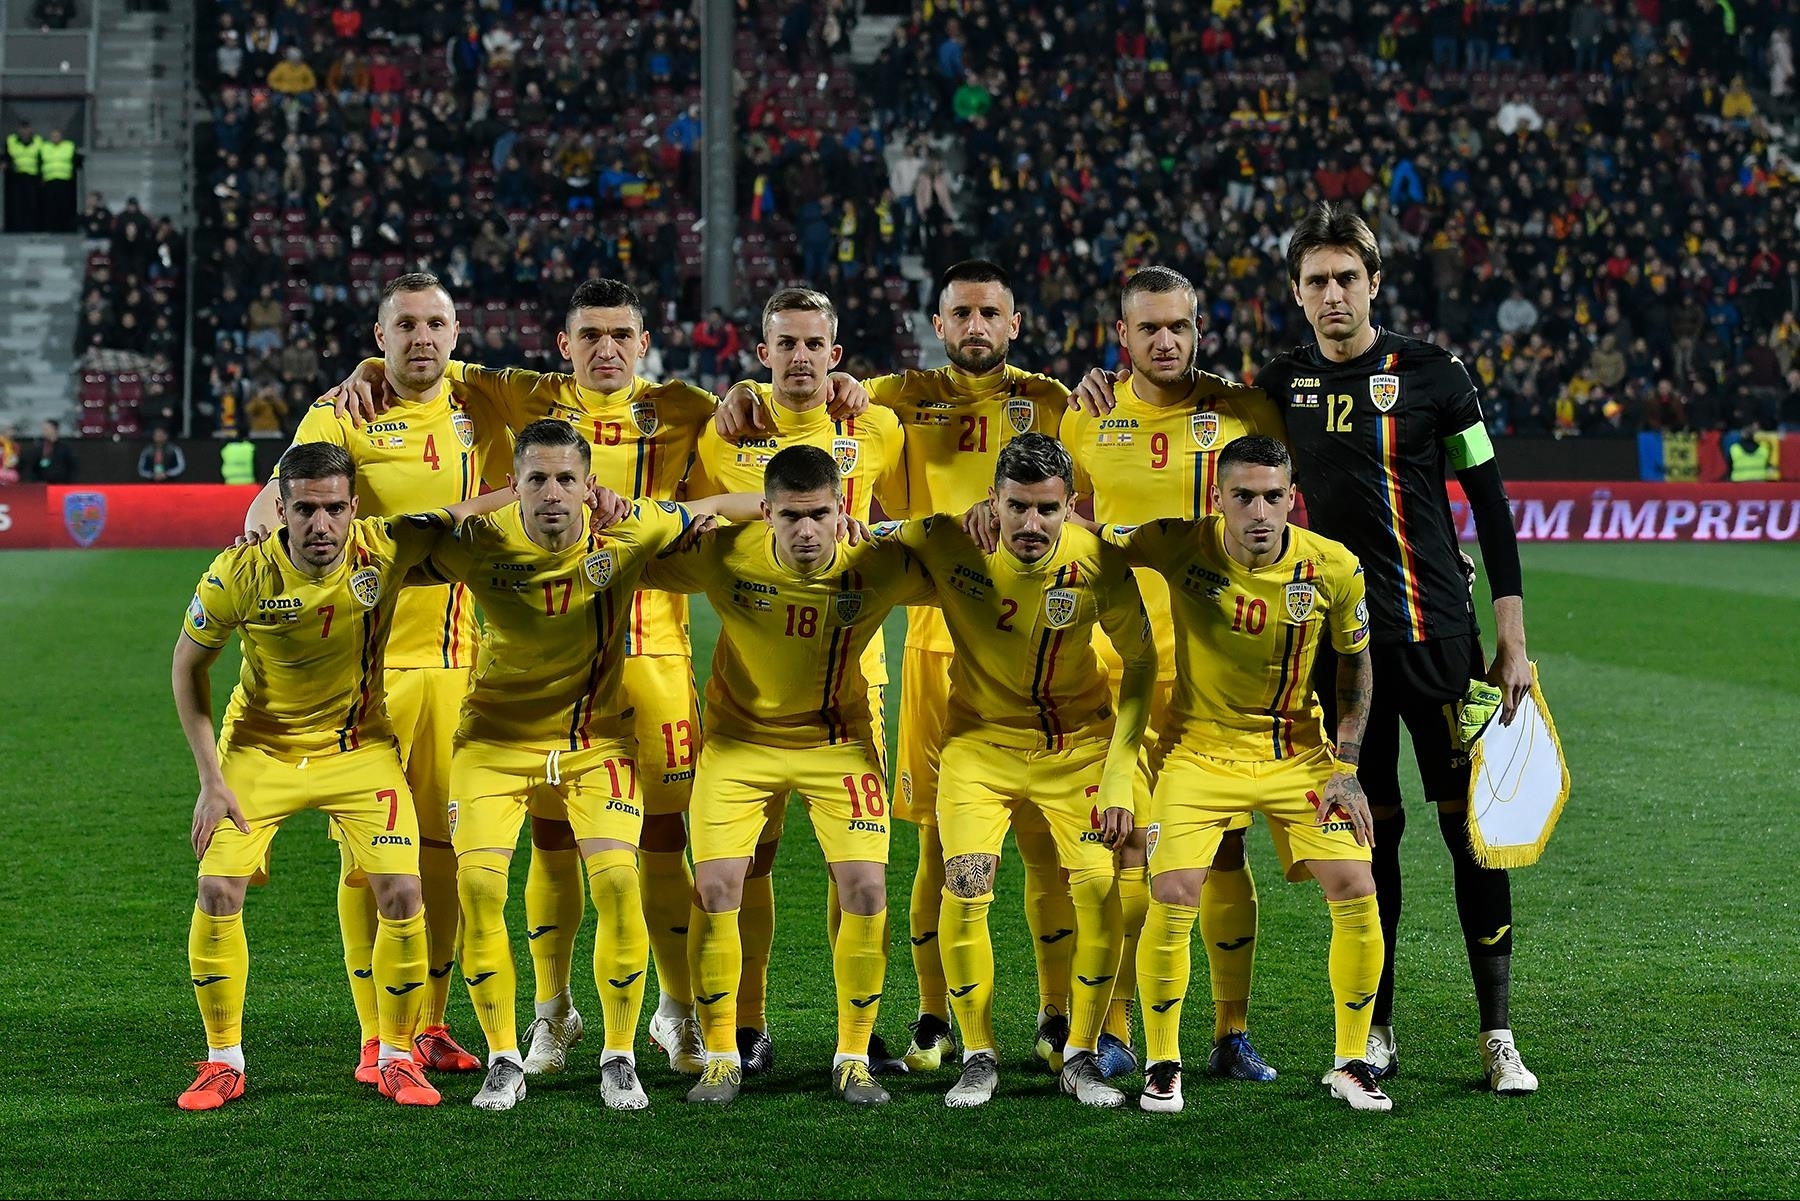 Echipa naţională de fotbal a României